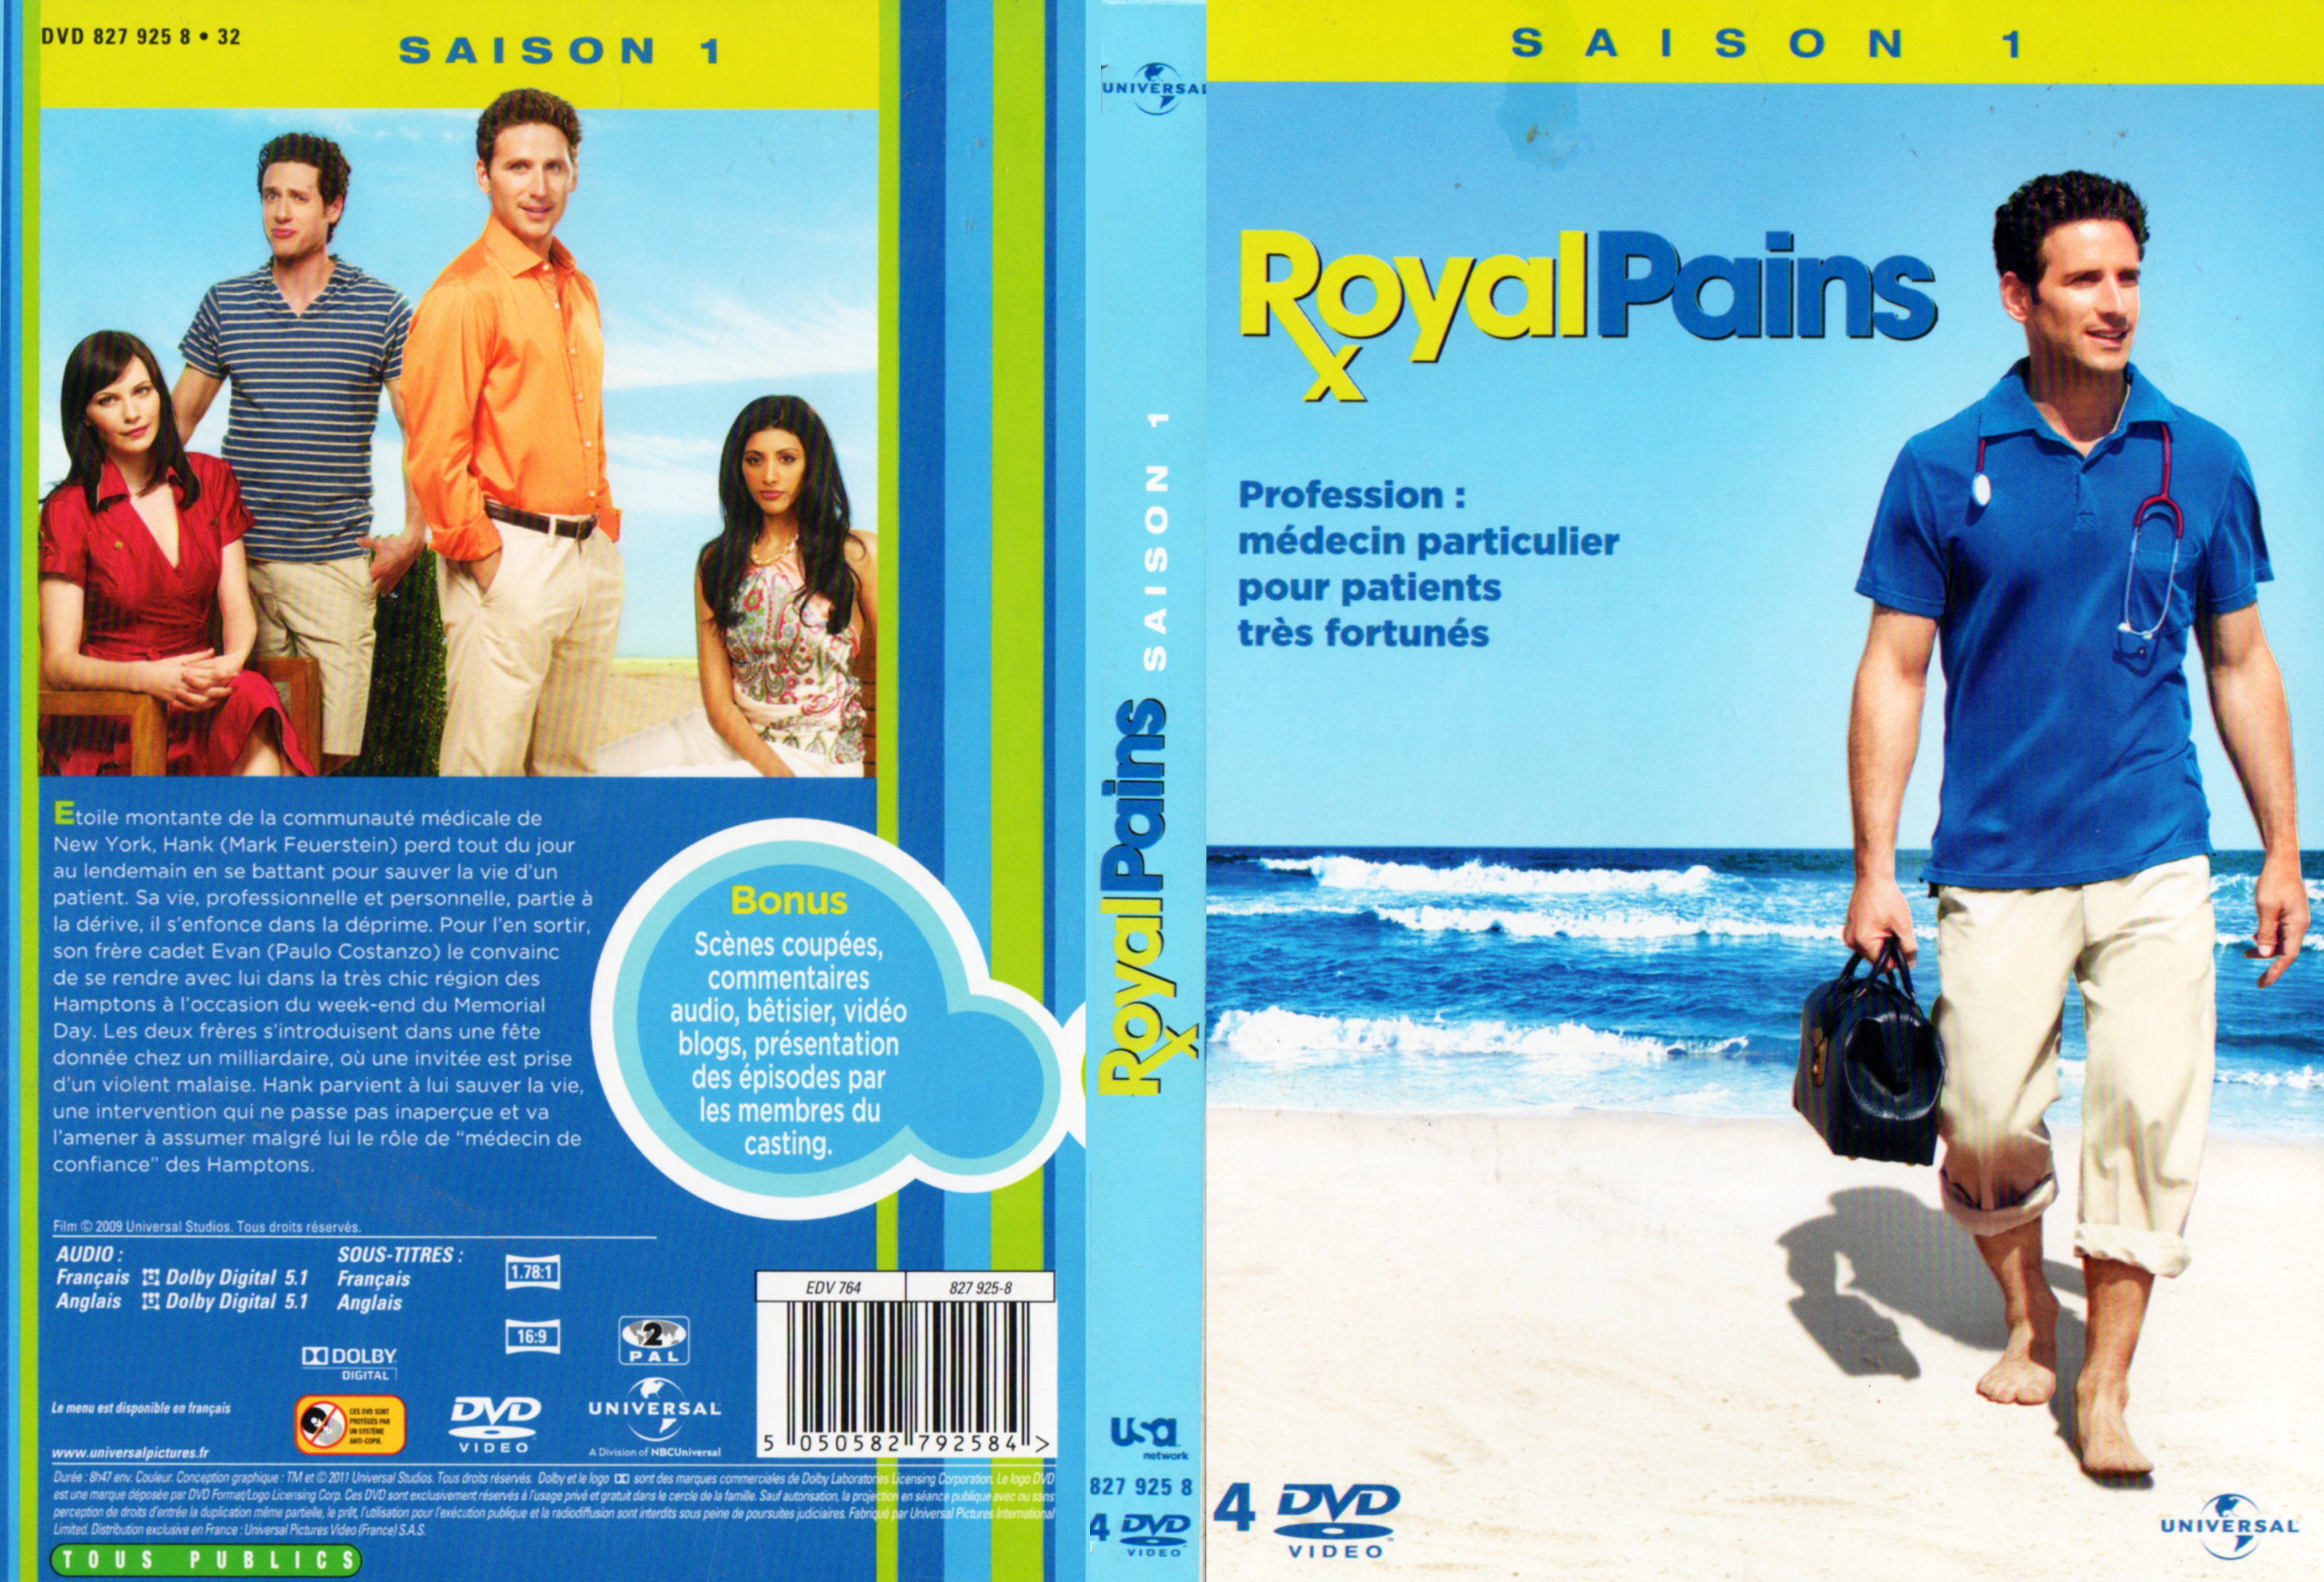 Jaquette DVD Royal pains Saison 1